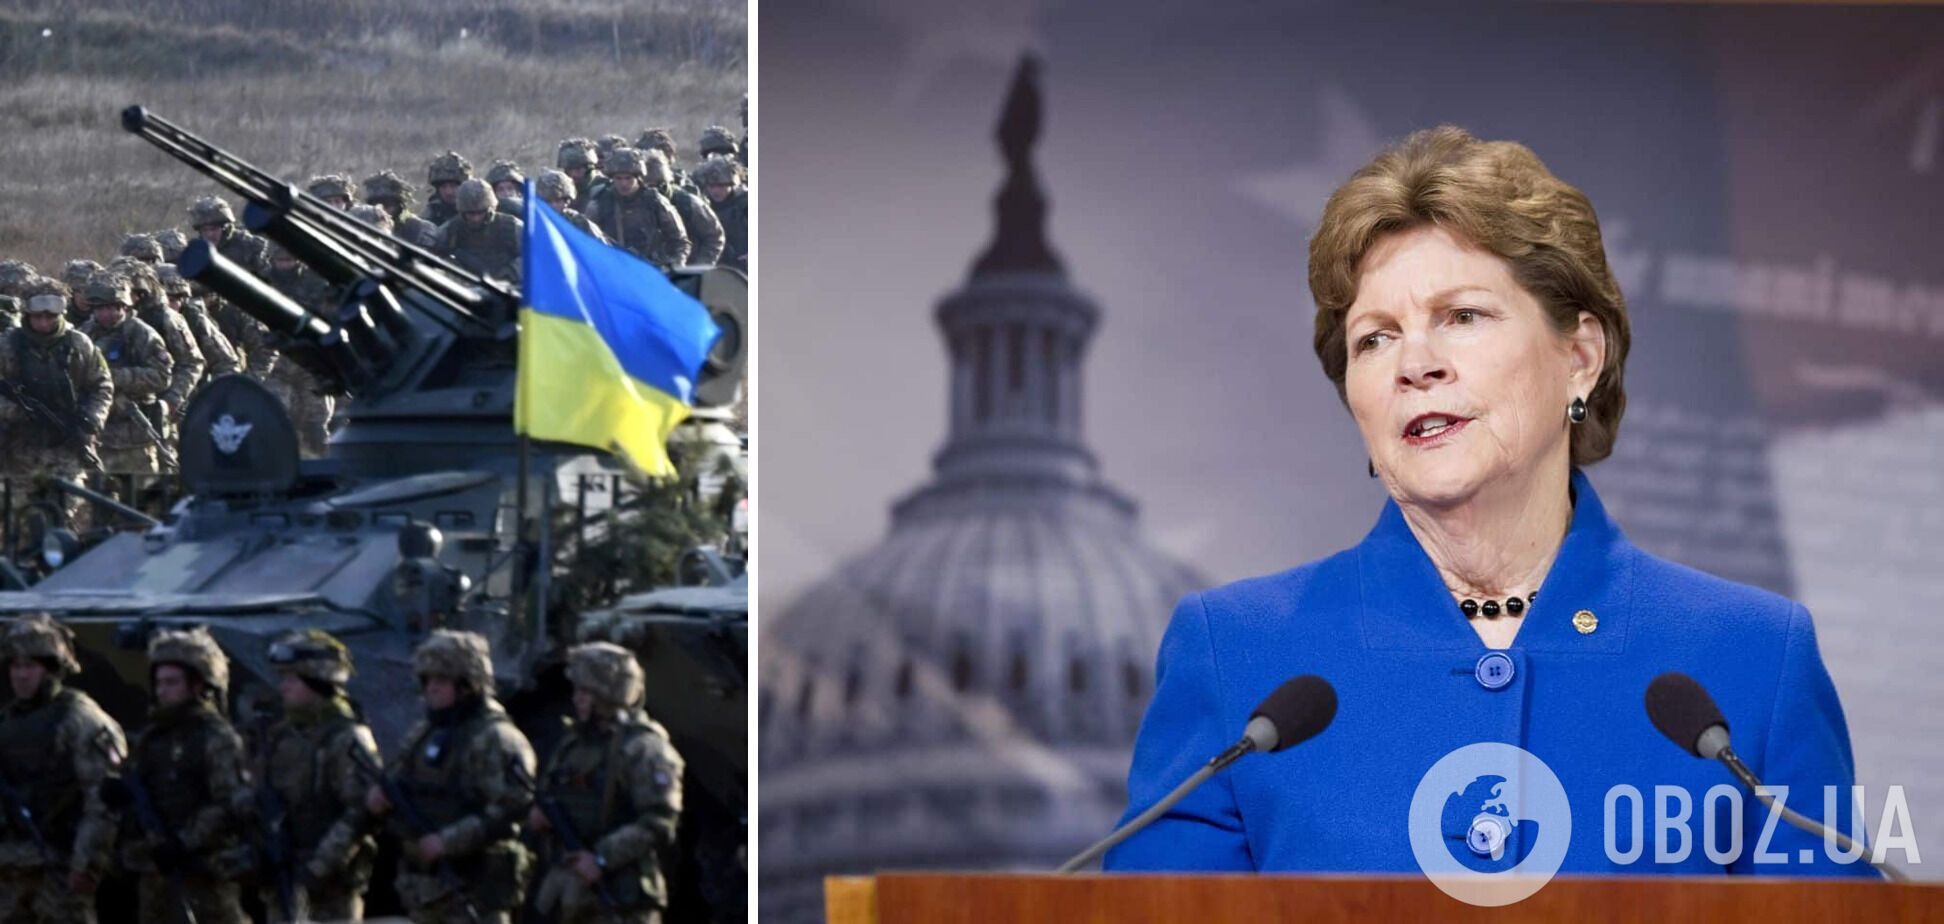 Законопроєкт про ленд-ліз для України представила сенаторка Джин Шахін